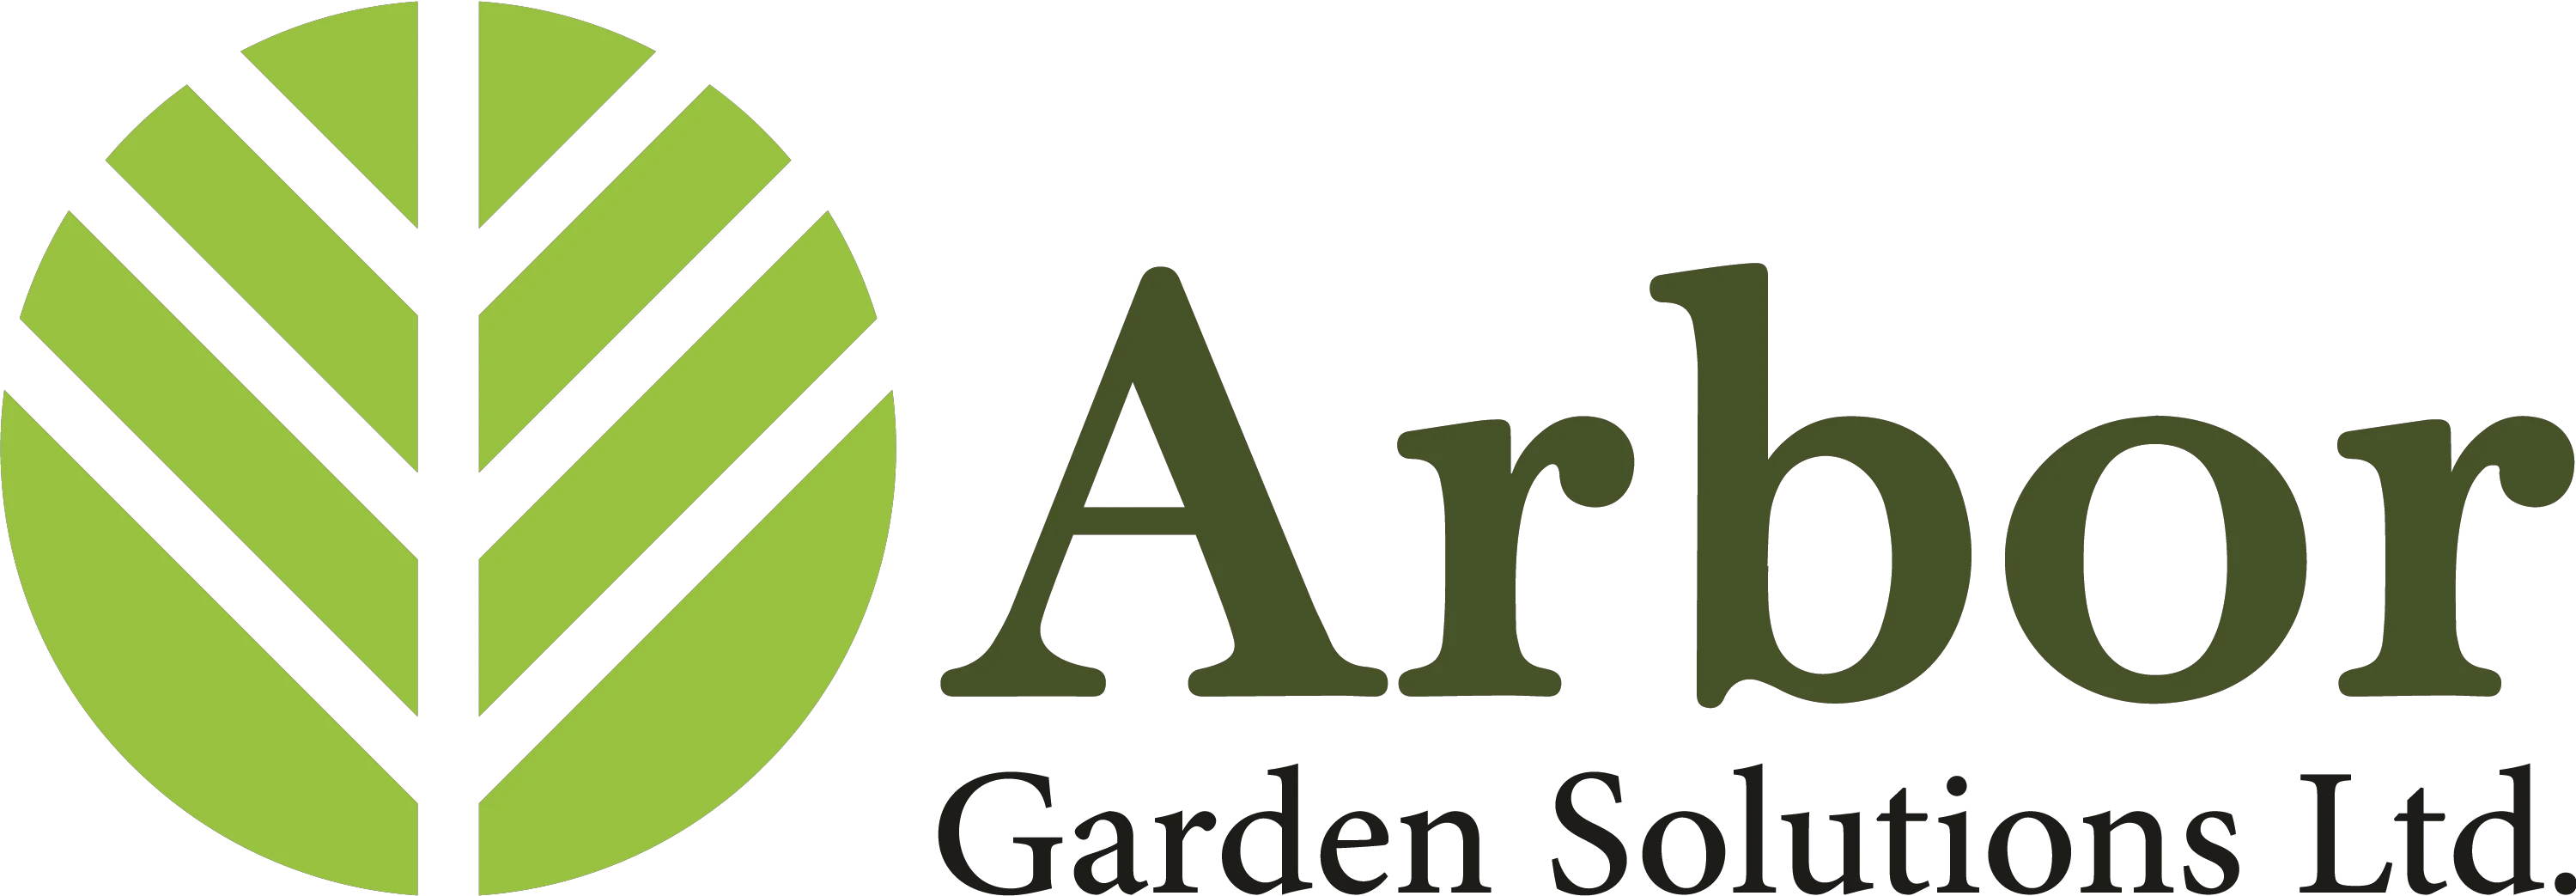 Arbor Garden Solutions優惠券 